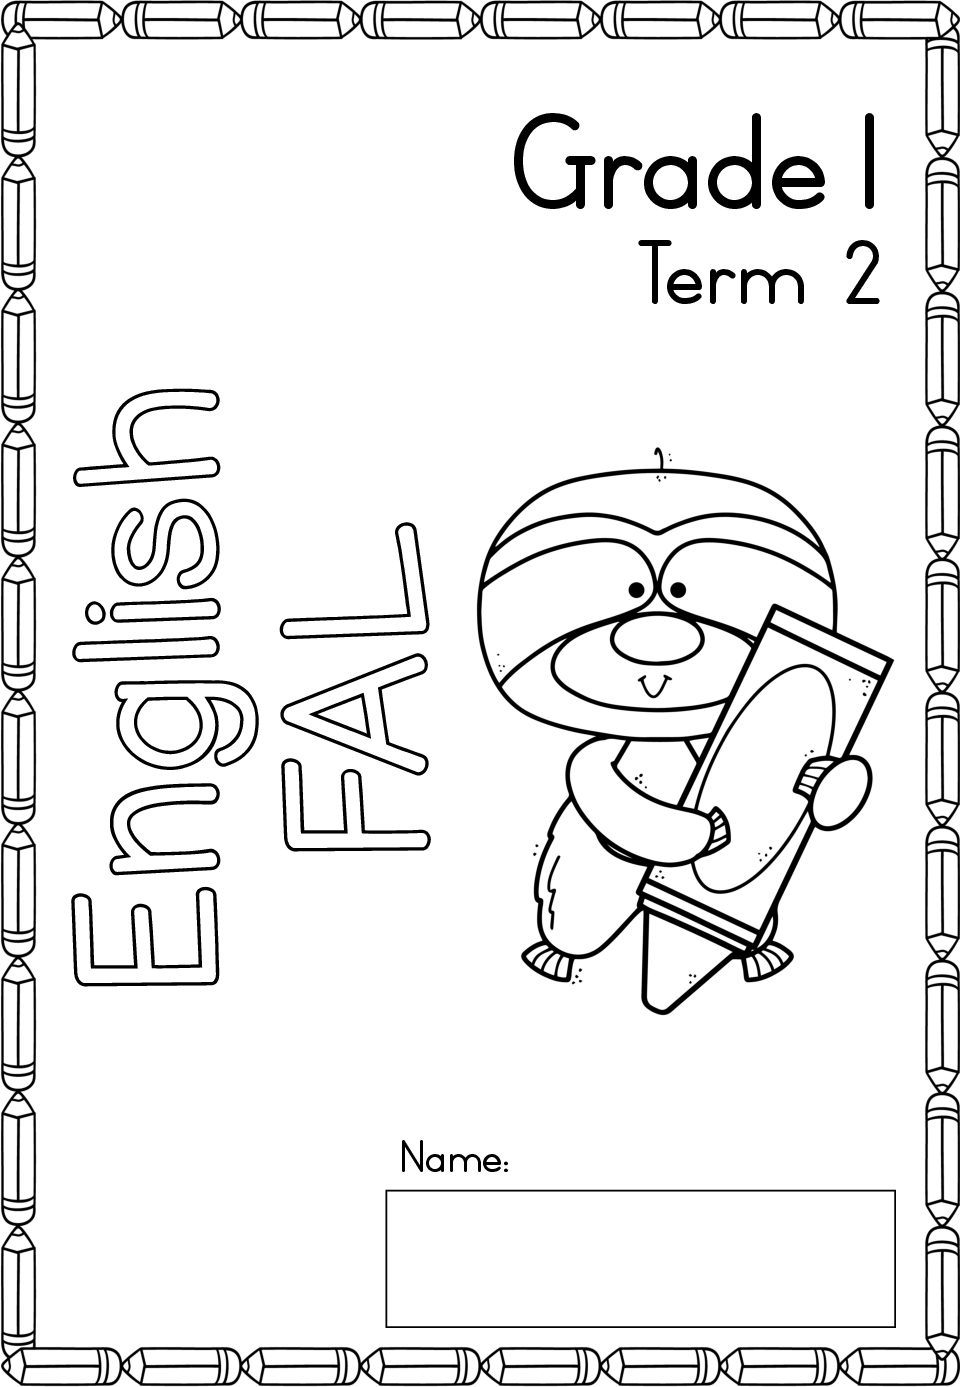 english-fal-activity-book-grade-1-term-2-teacha